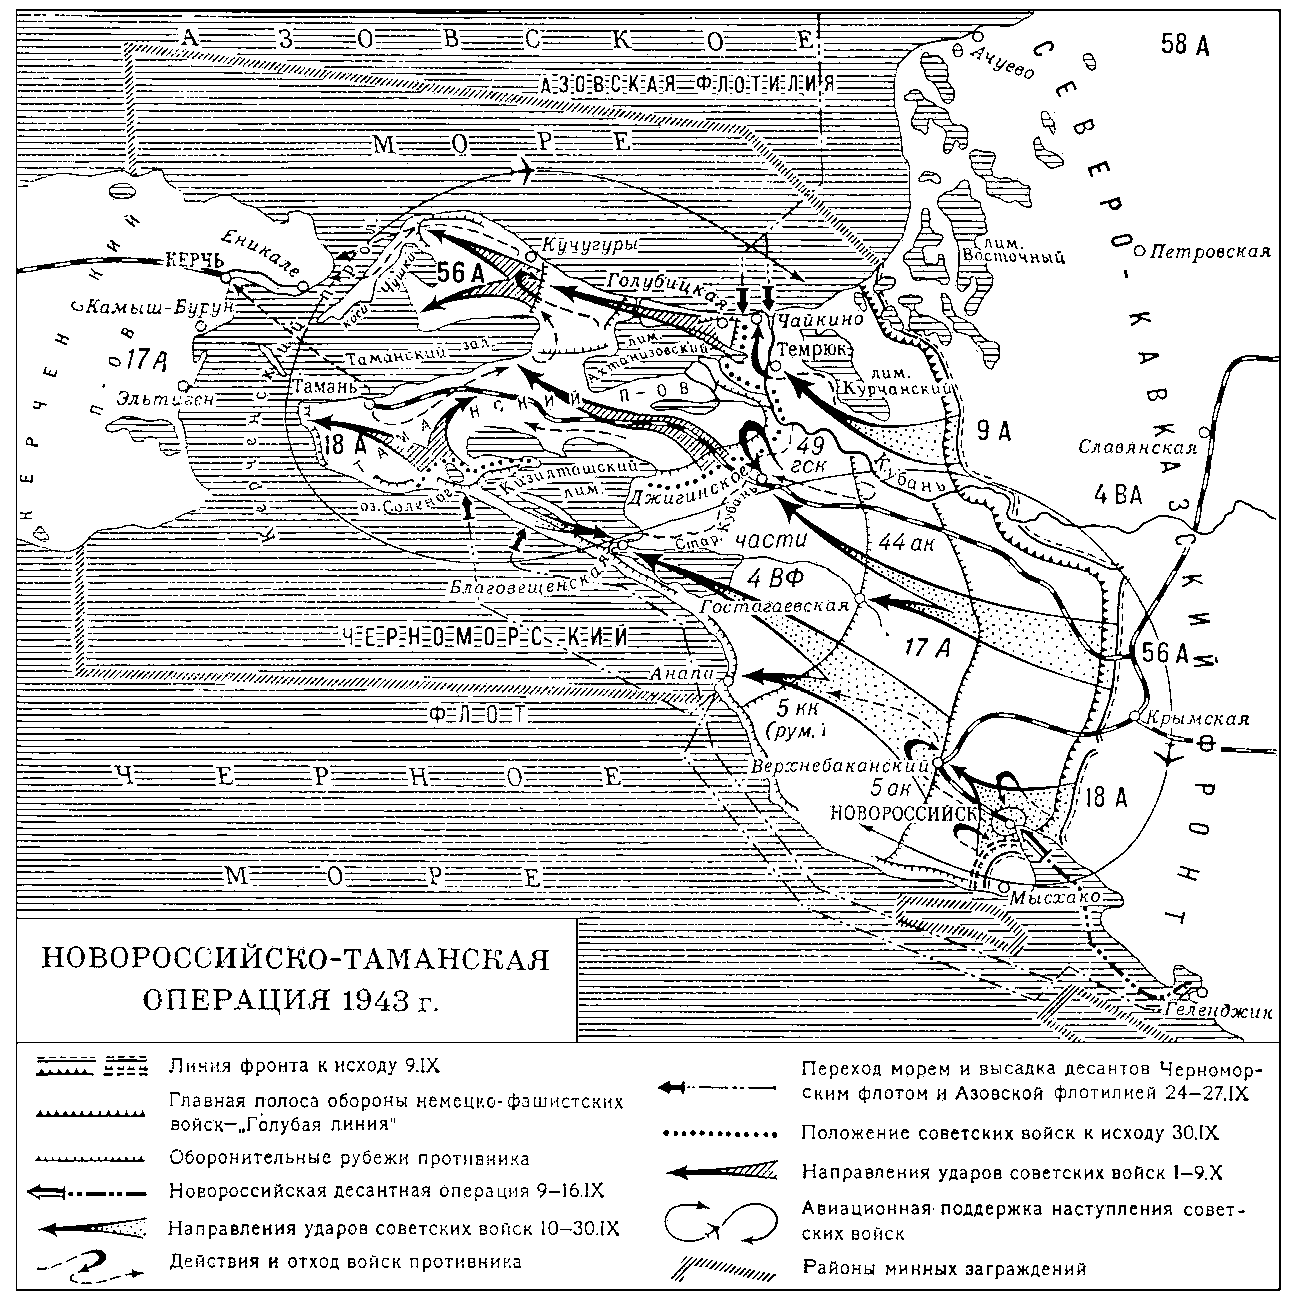 Новороссийско-Таманская операция 1943